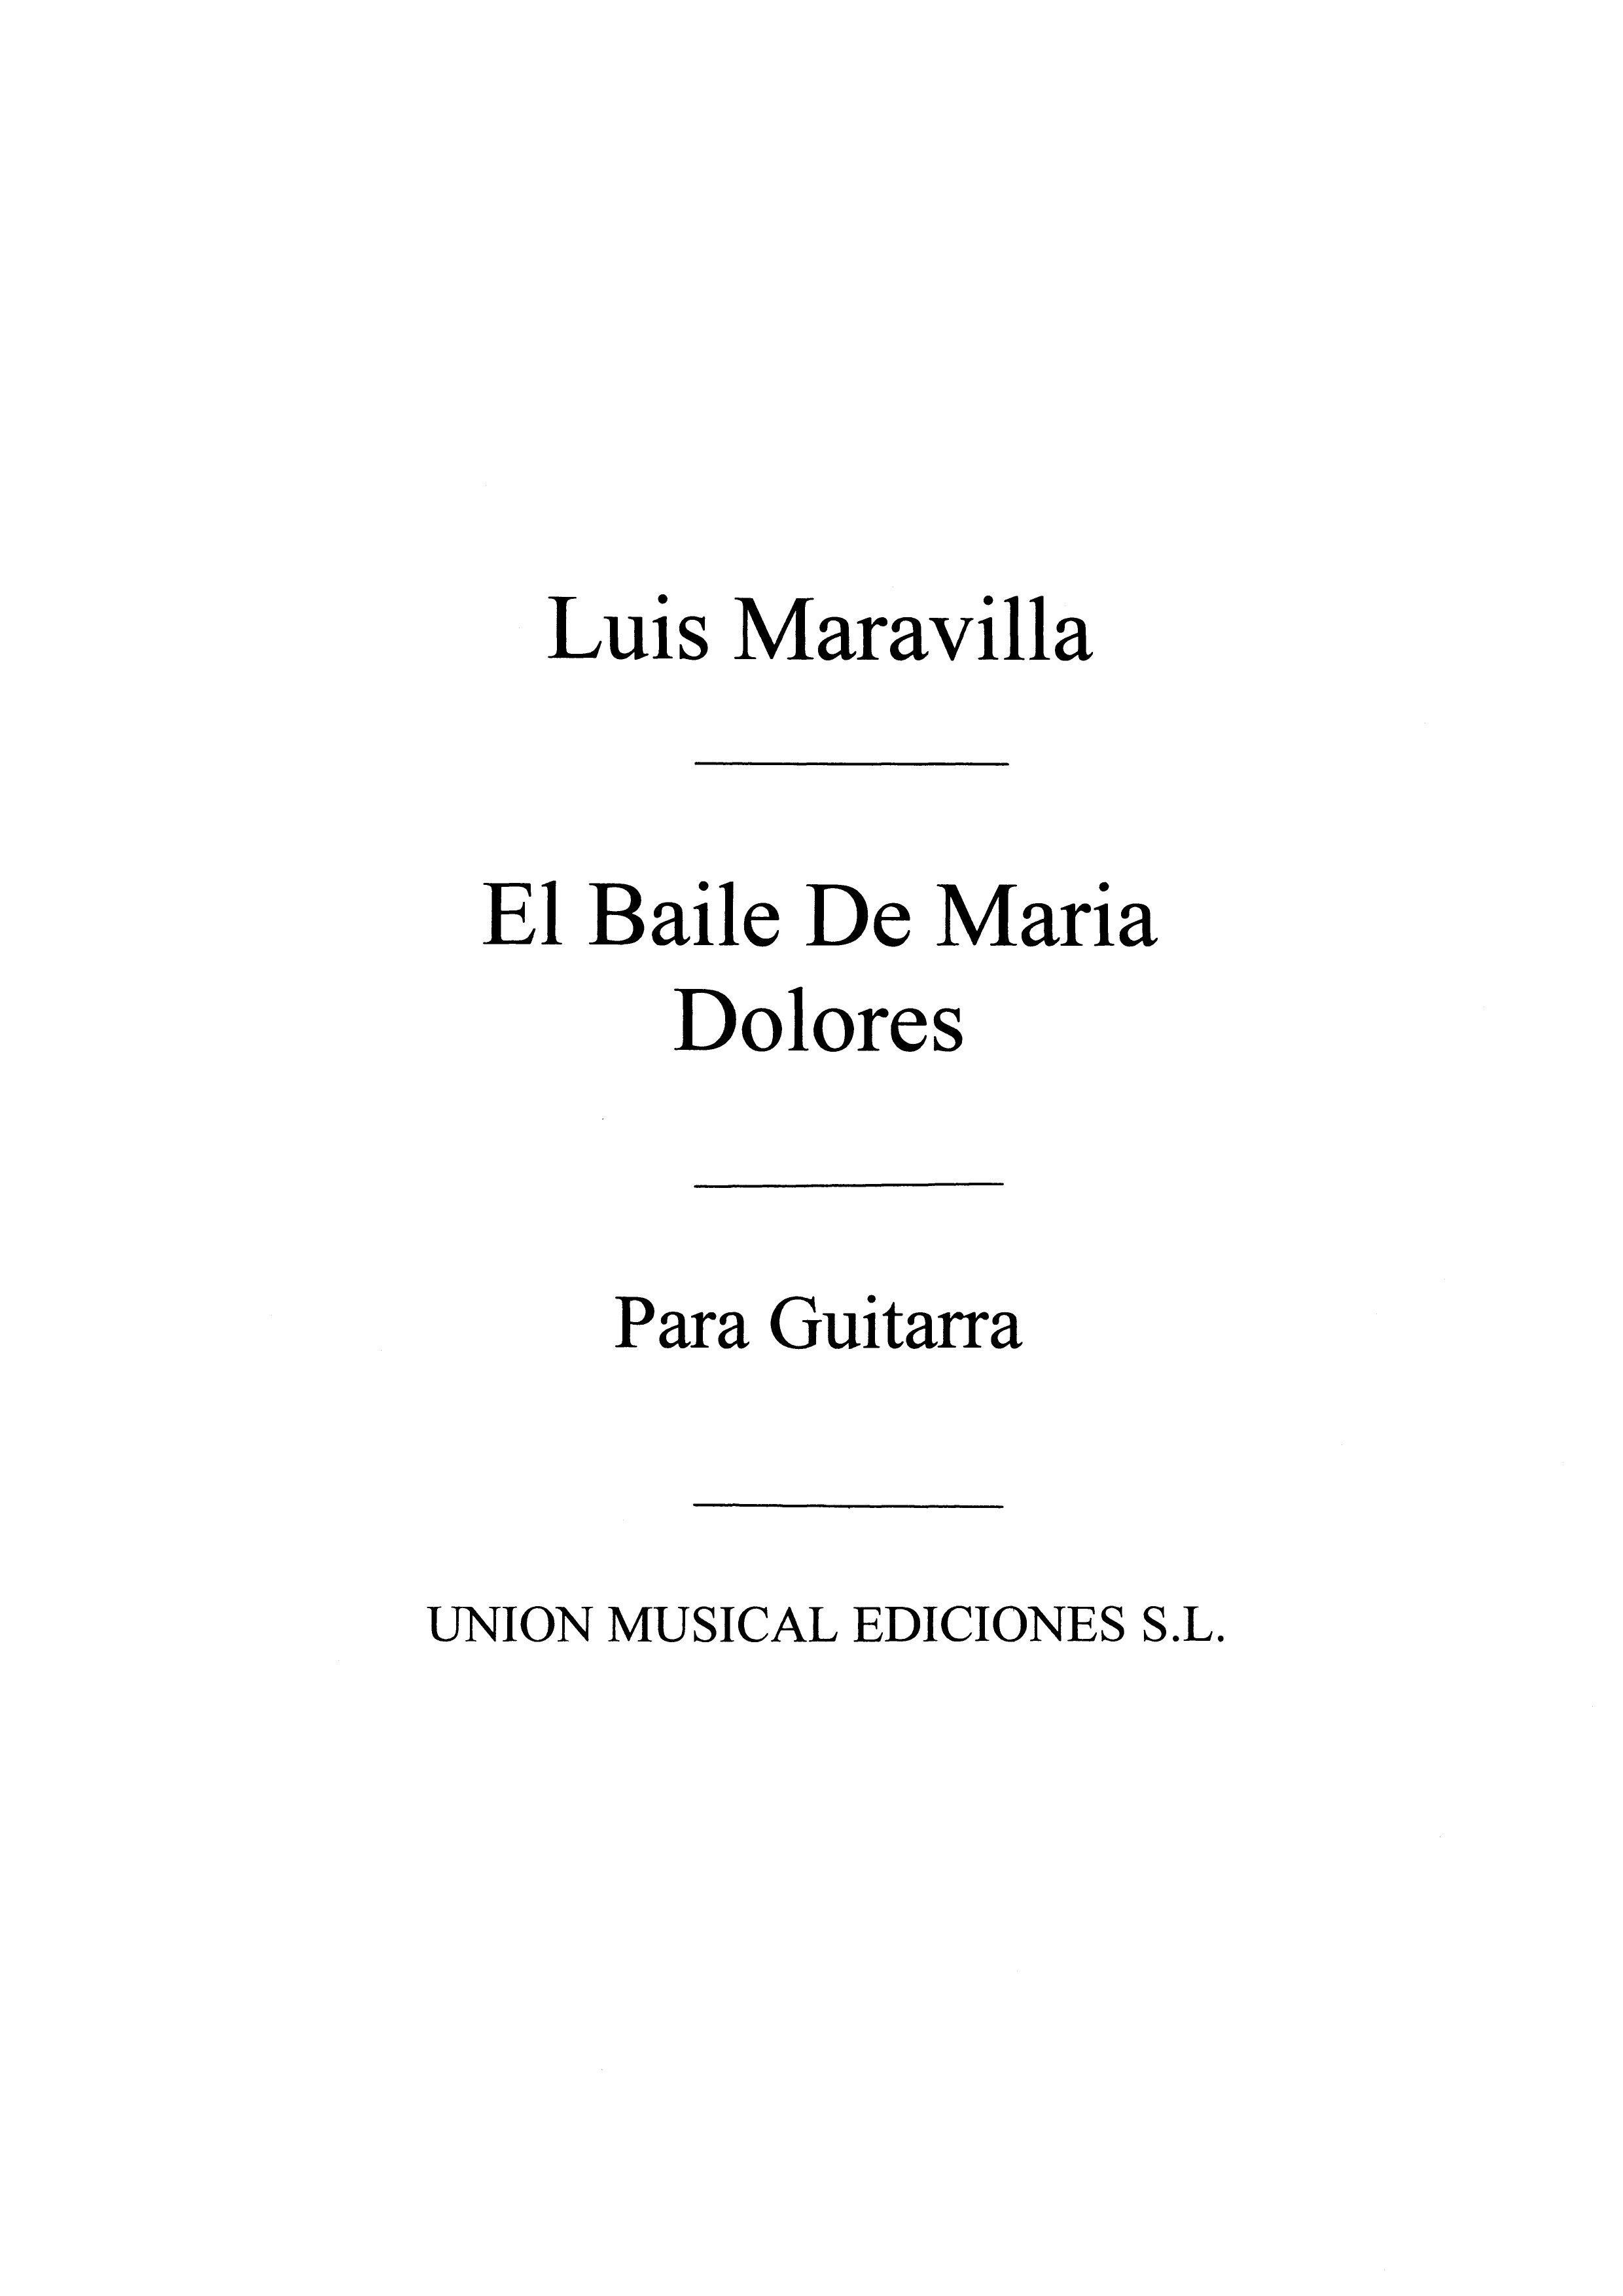 Luis Maravilla: El Baile De Maria Dolores  Soleares: Guitar: Instrumental Work